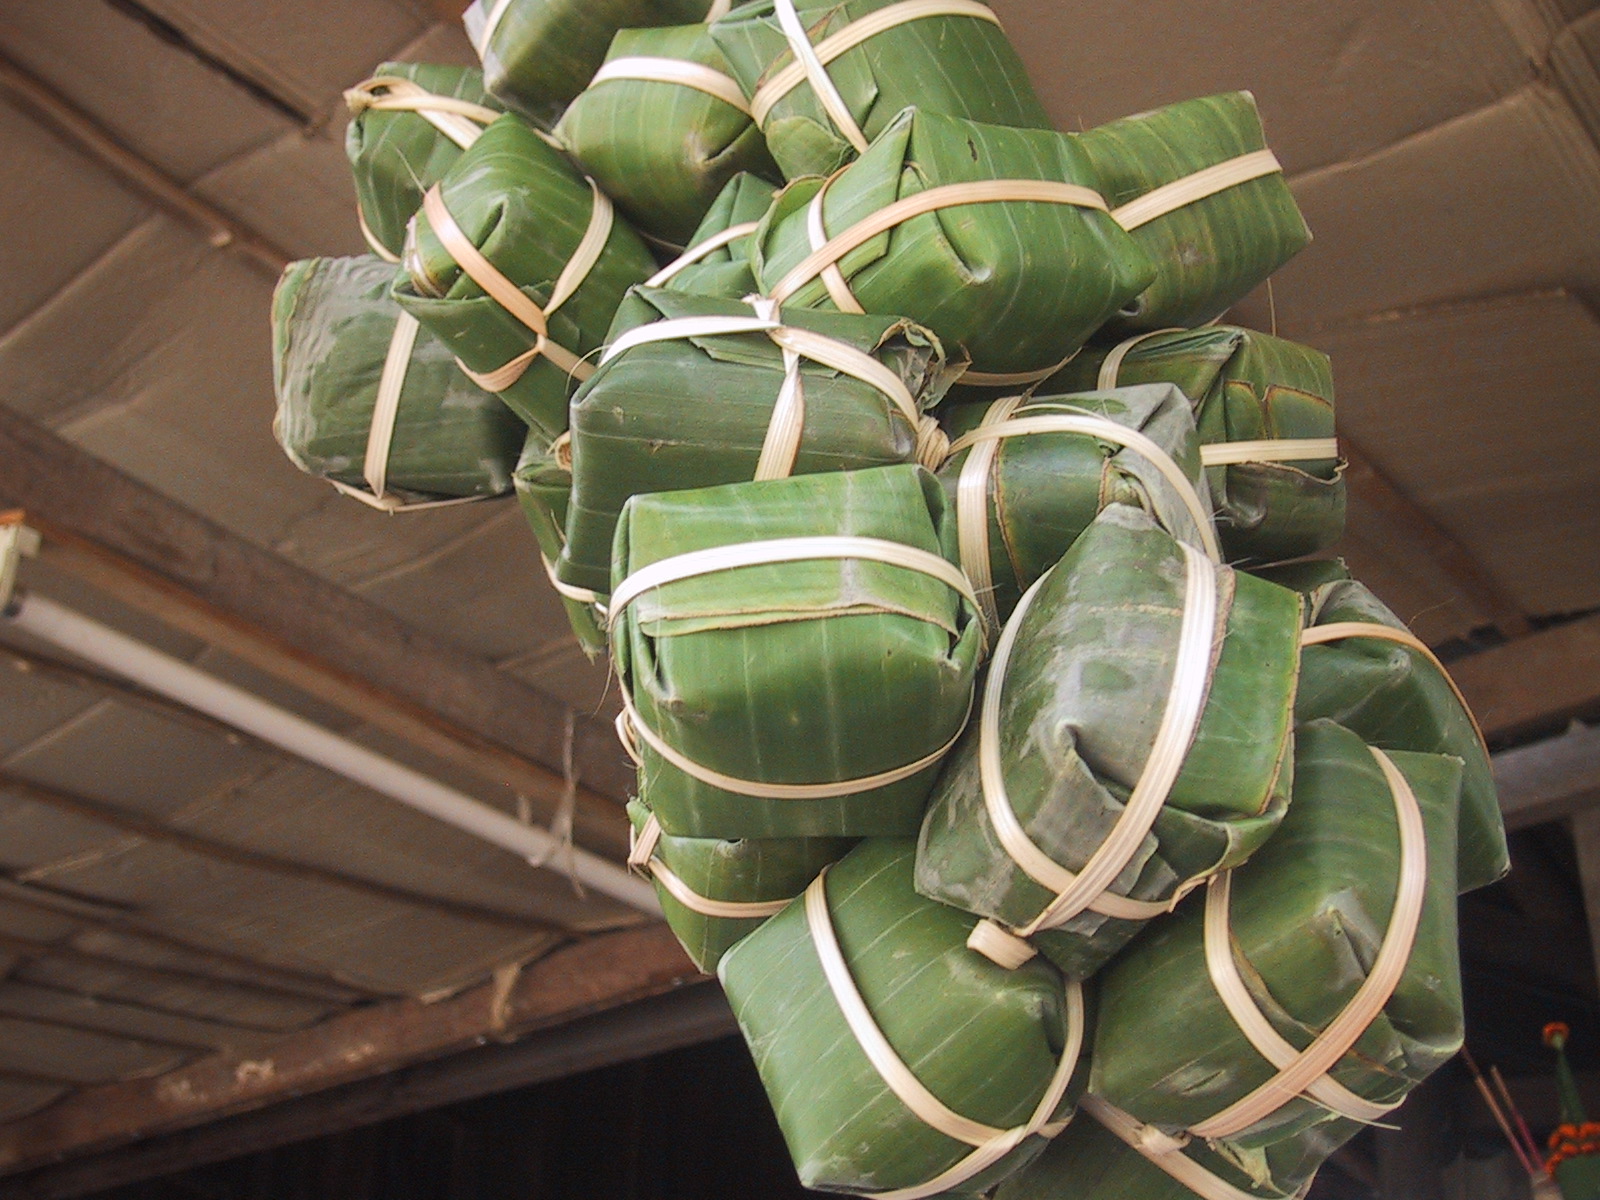  Nem chua - Niềm tự hào mang đậm dấu ấn ẩm thực của người dân xứ Thanh